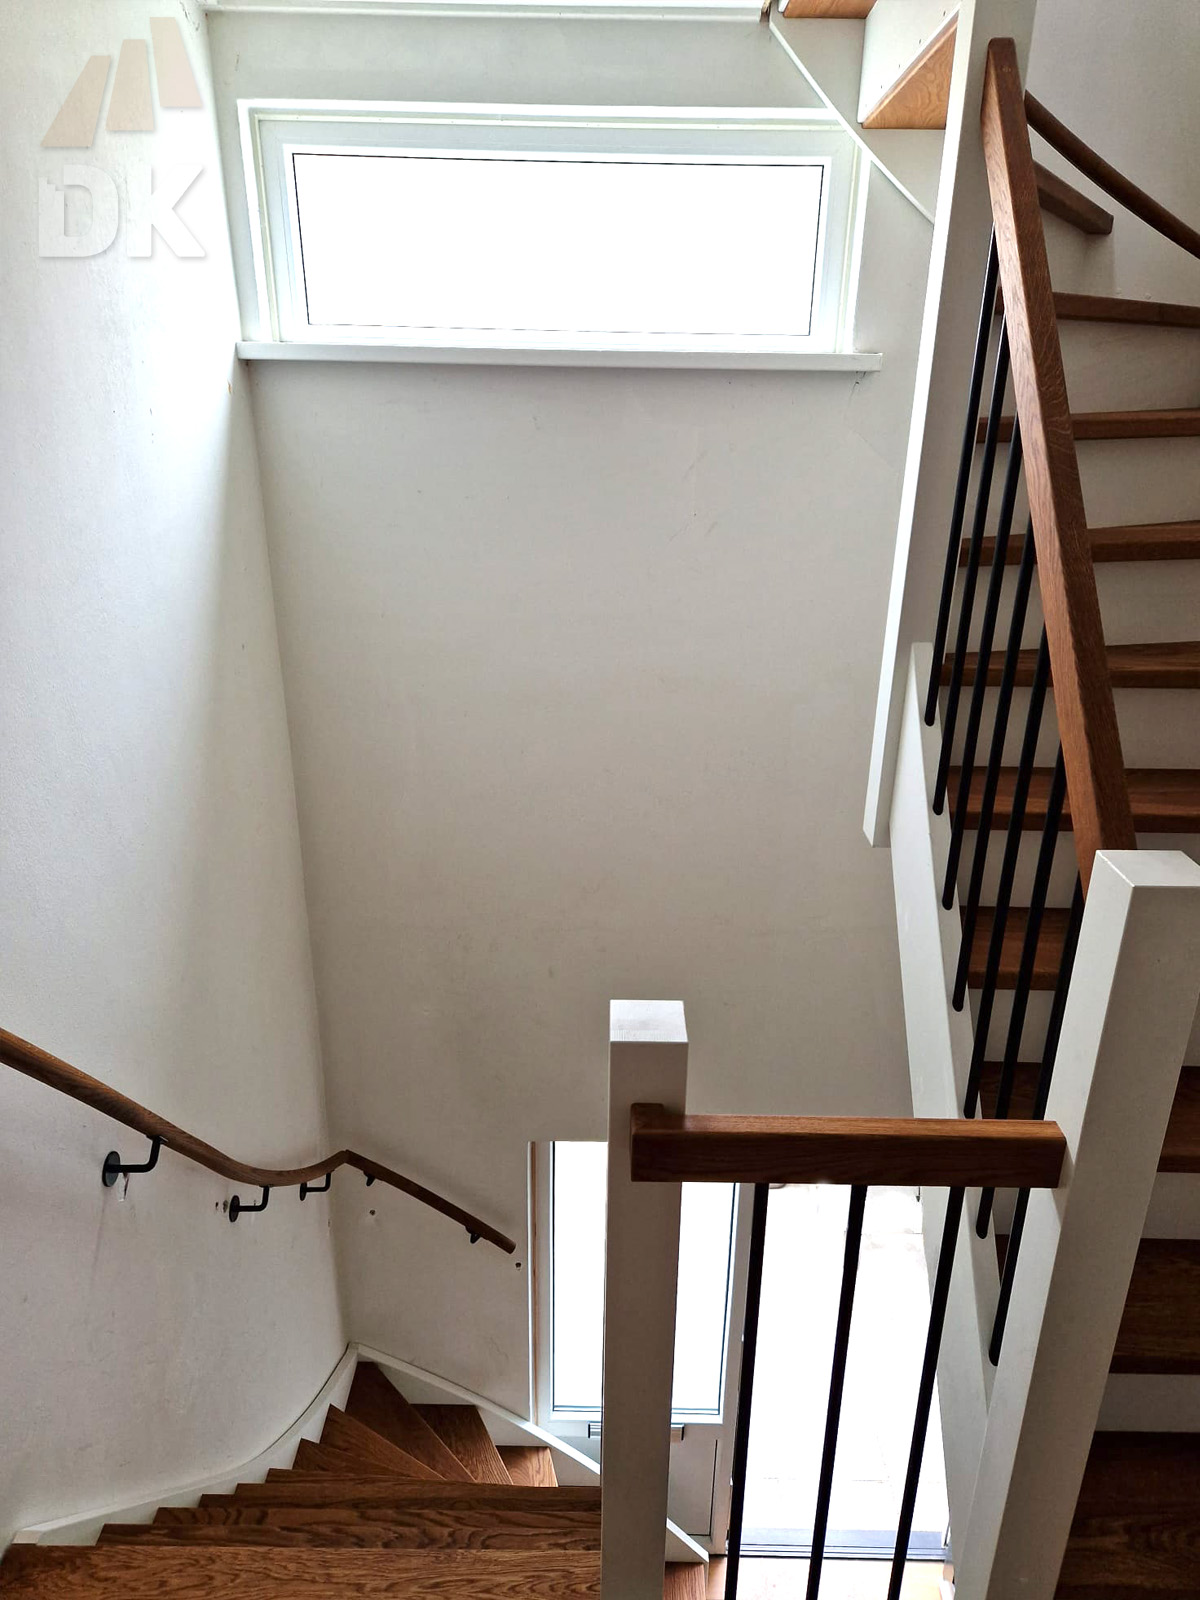 2 Stalen trappen vervangen door kwarttrappen - Foto 6